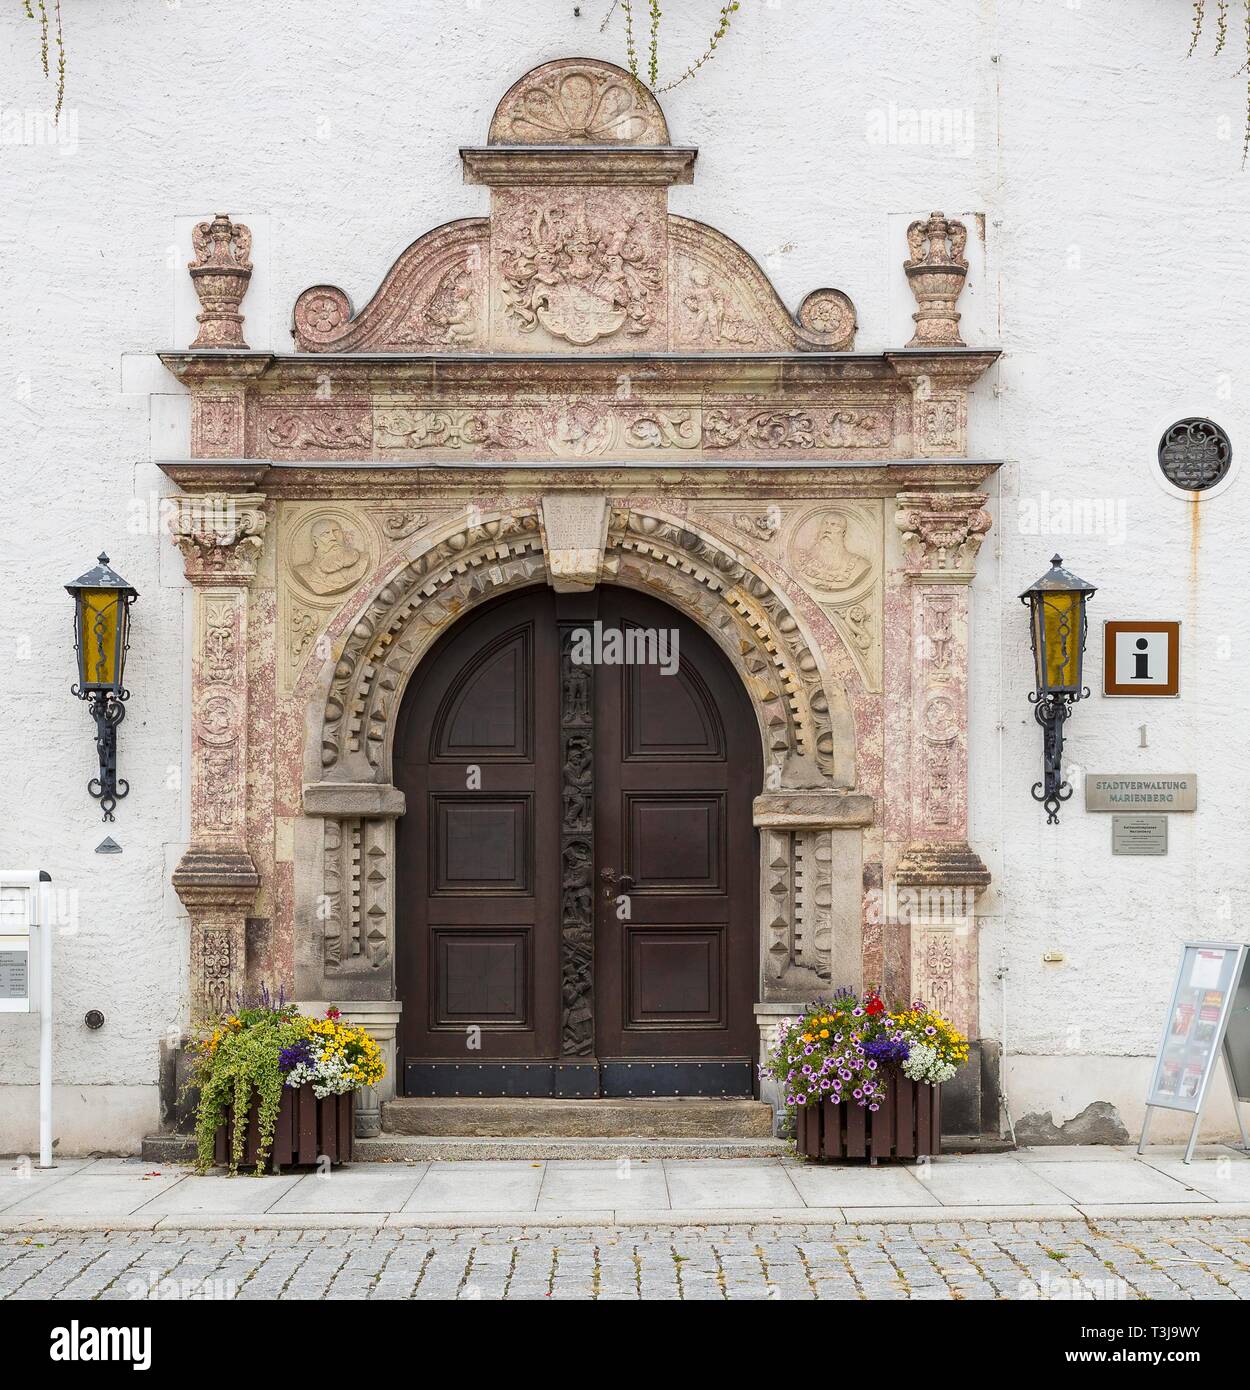 Portal am Rathaus in Marienberg, Erzgebirge, Sachsen, Deutschland Stockfoto